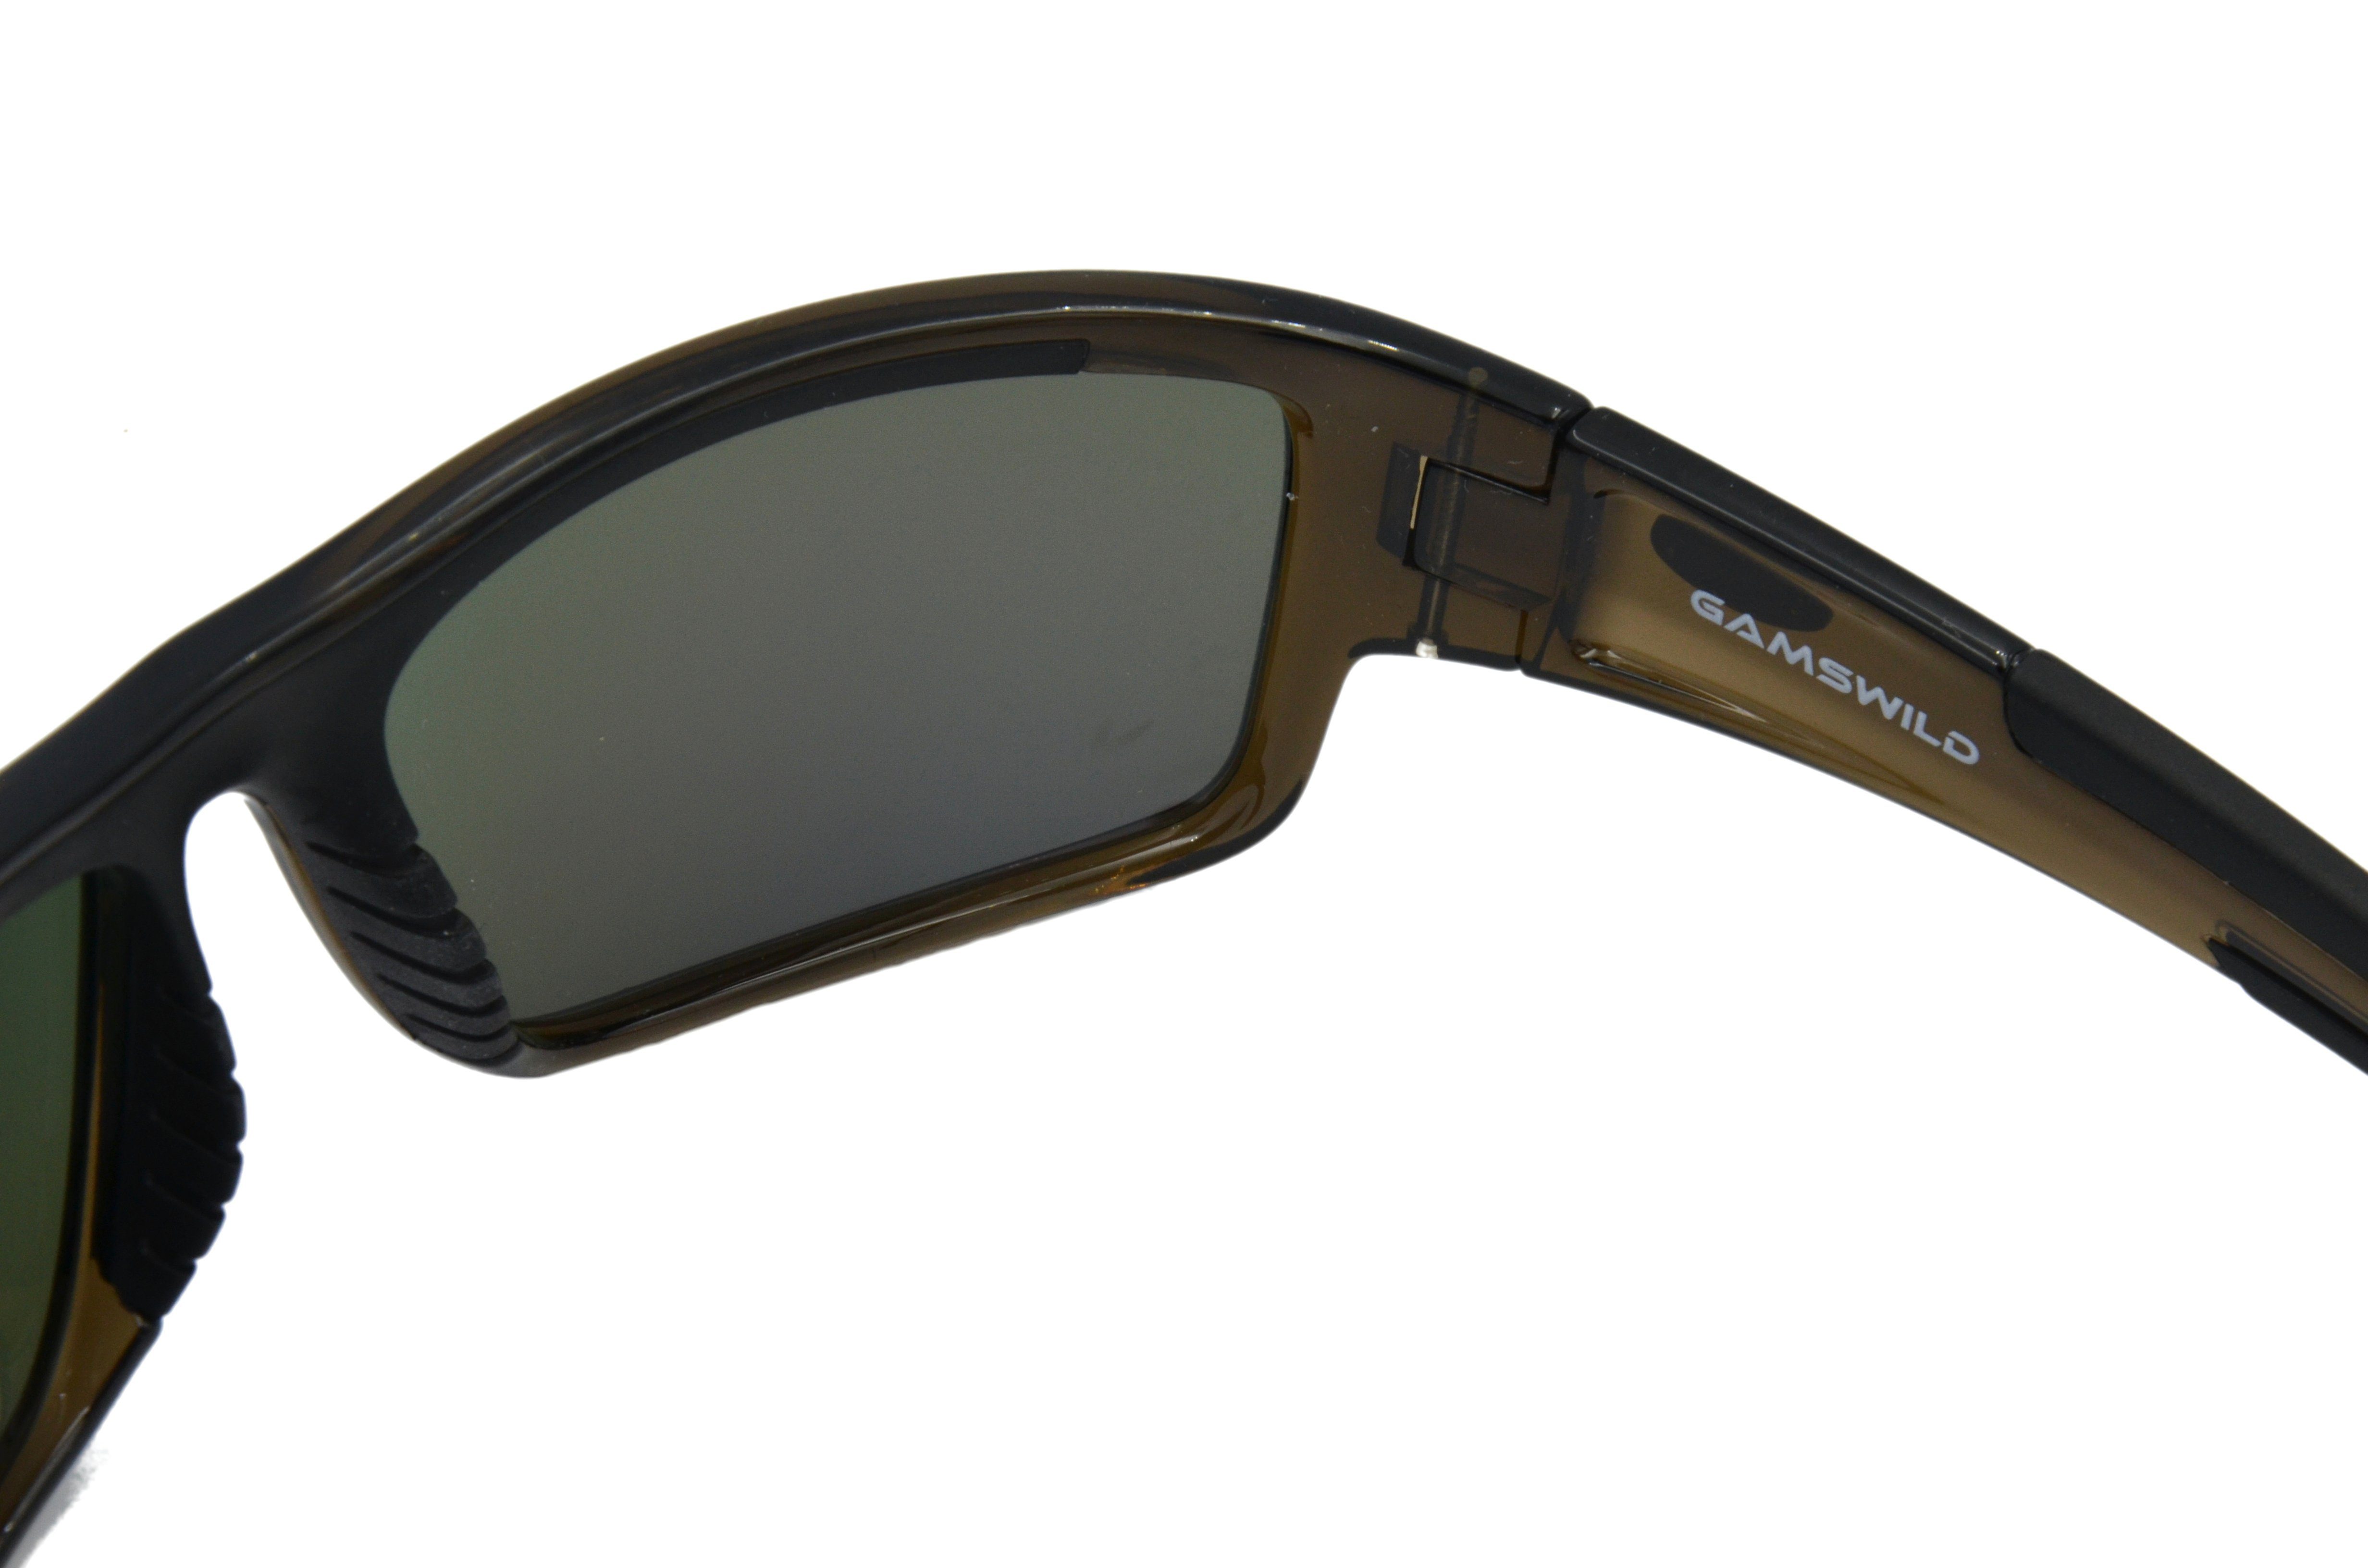 grün-türkis, Sportbrille Herren, blau, grau, Gläser, schwarz, Damen braun polarisierte WS6034 Sonnenbrille Fahrradbrille Sportbrille Gamswild Skibrille